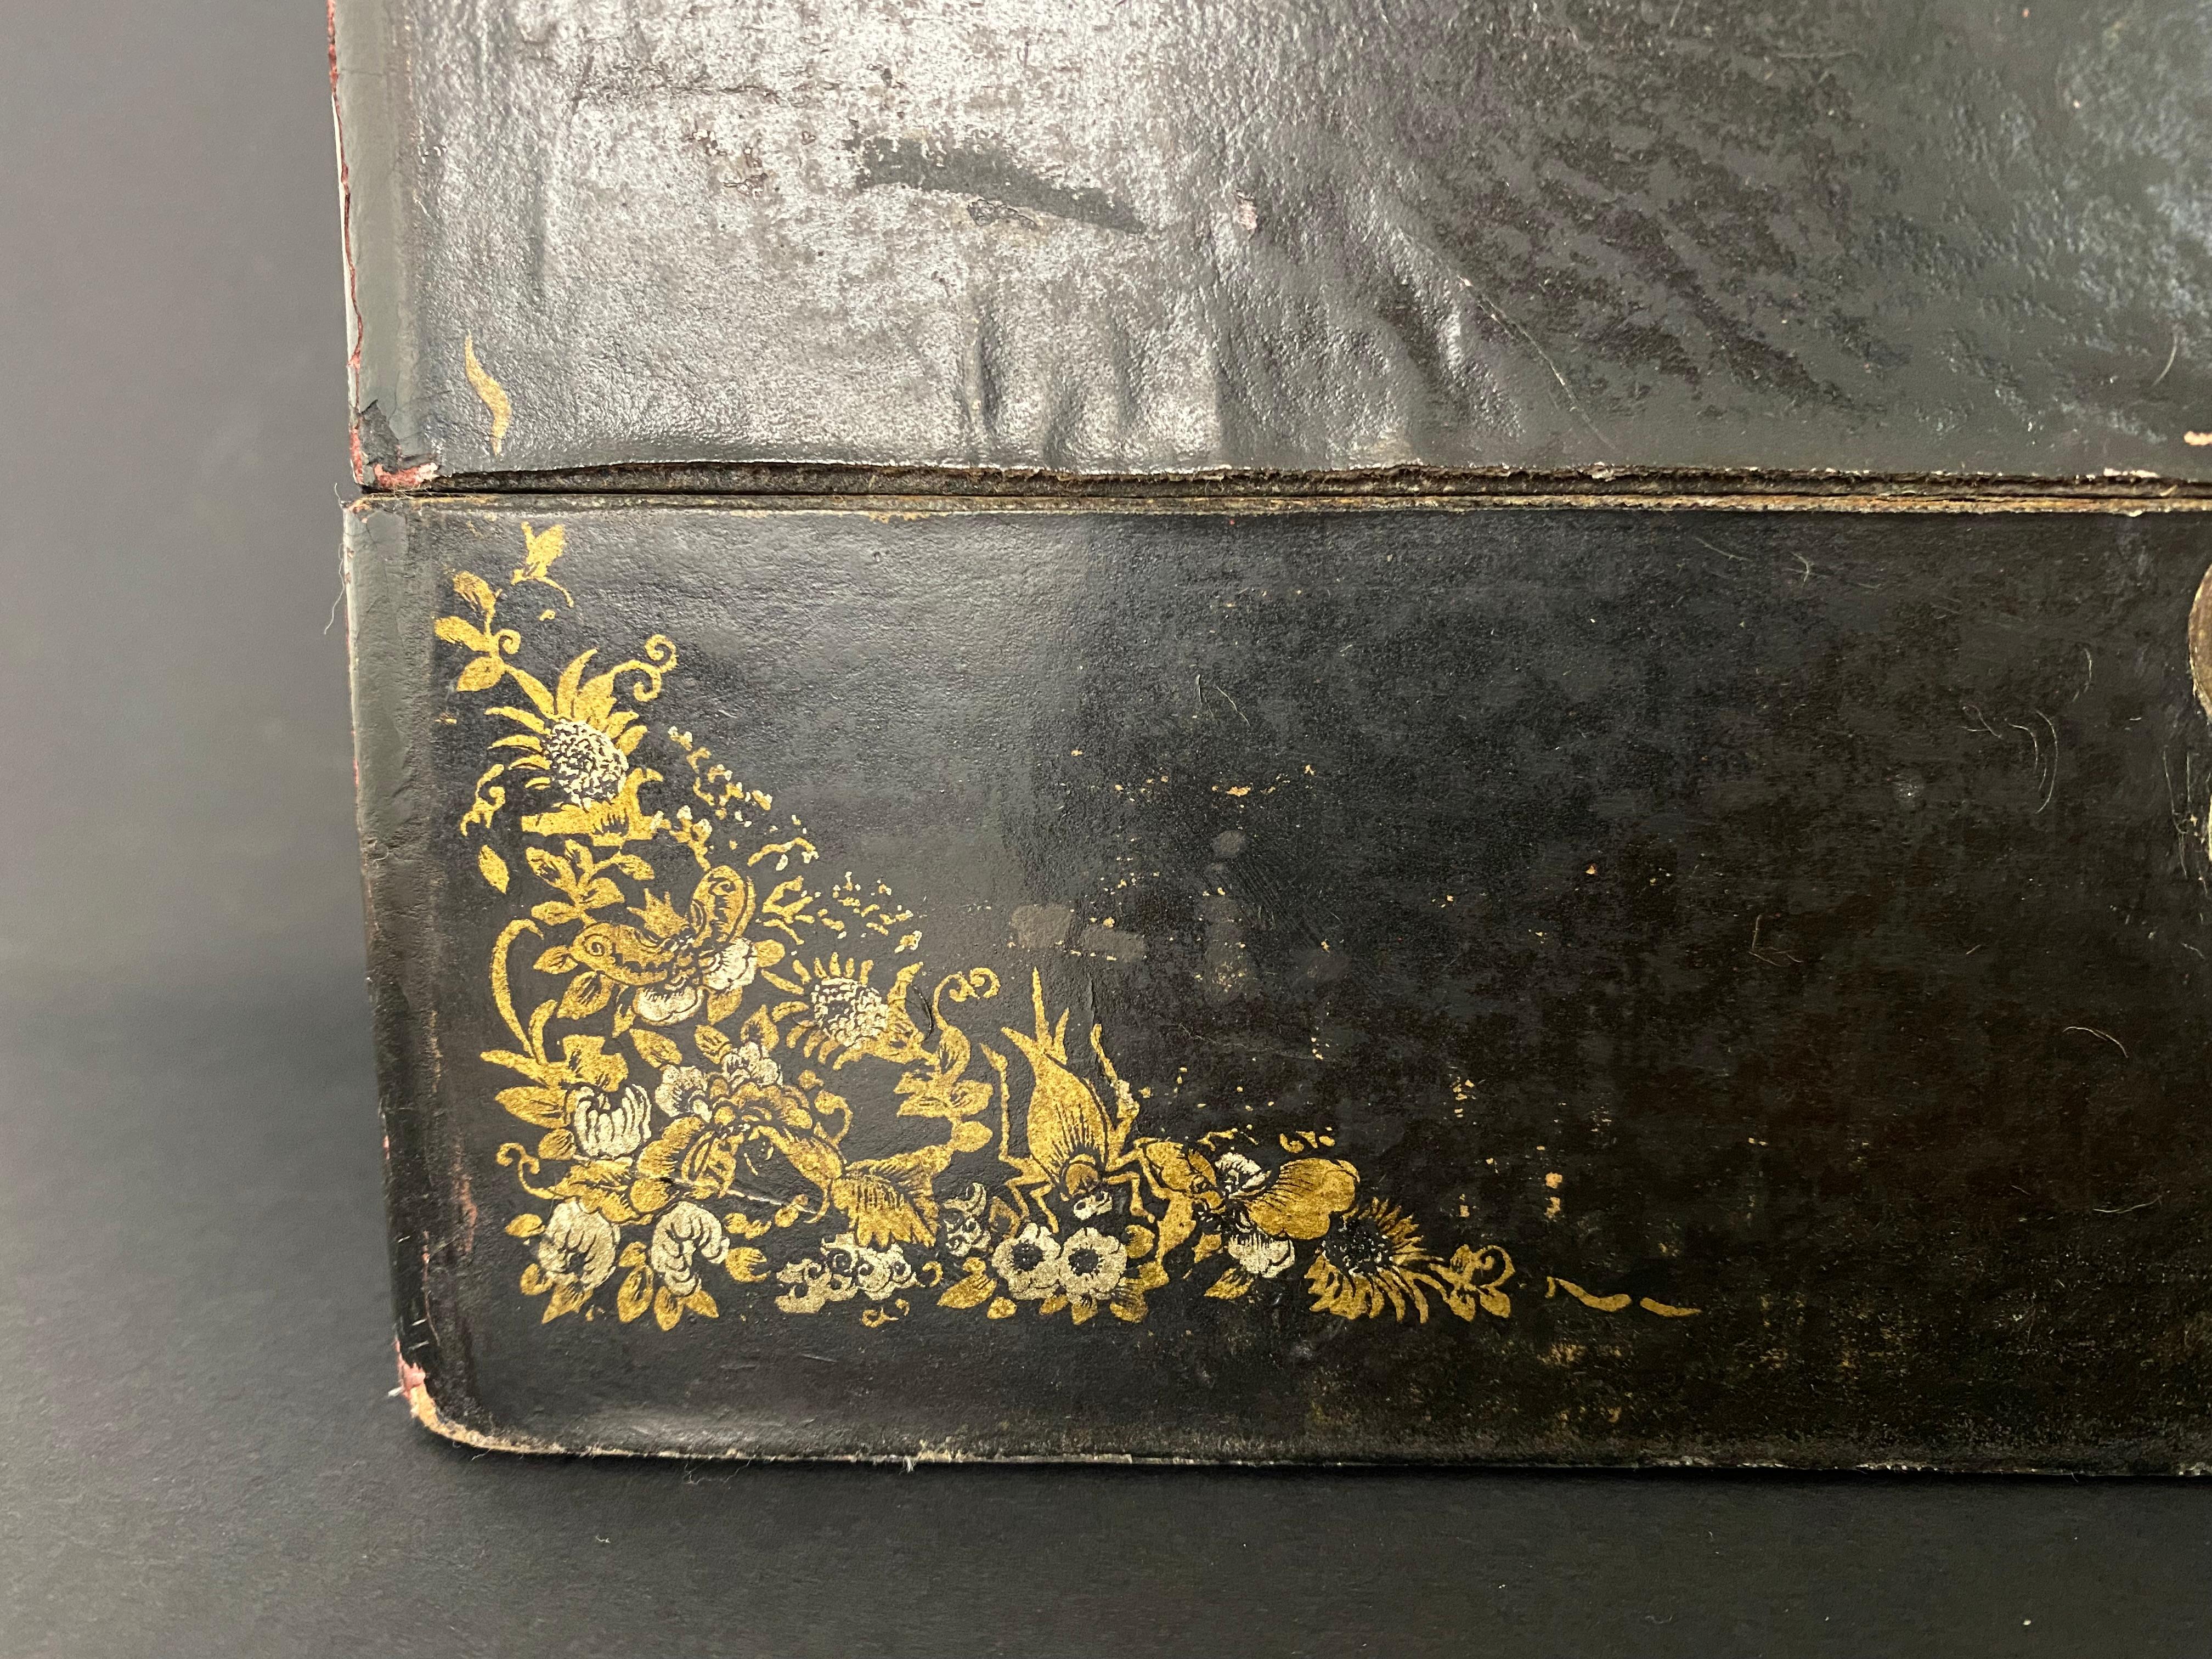 Très belle boîte également utilisée comme oreiller dans la culture japonaise, début du 20e siècle. Il est laqué noir et décoré de motifs floraux dorés peints à la main. Le loquet en cuivre est joliment ciselé d'une fleur et d'un aigle, ainsi que le